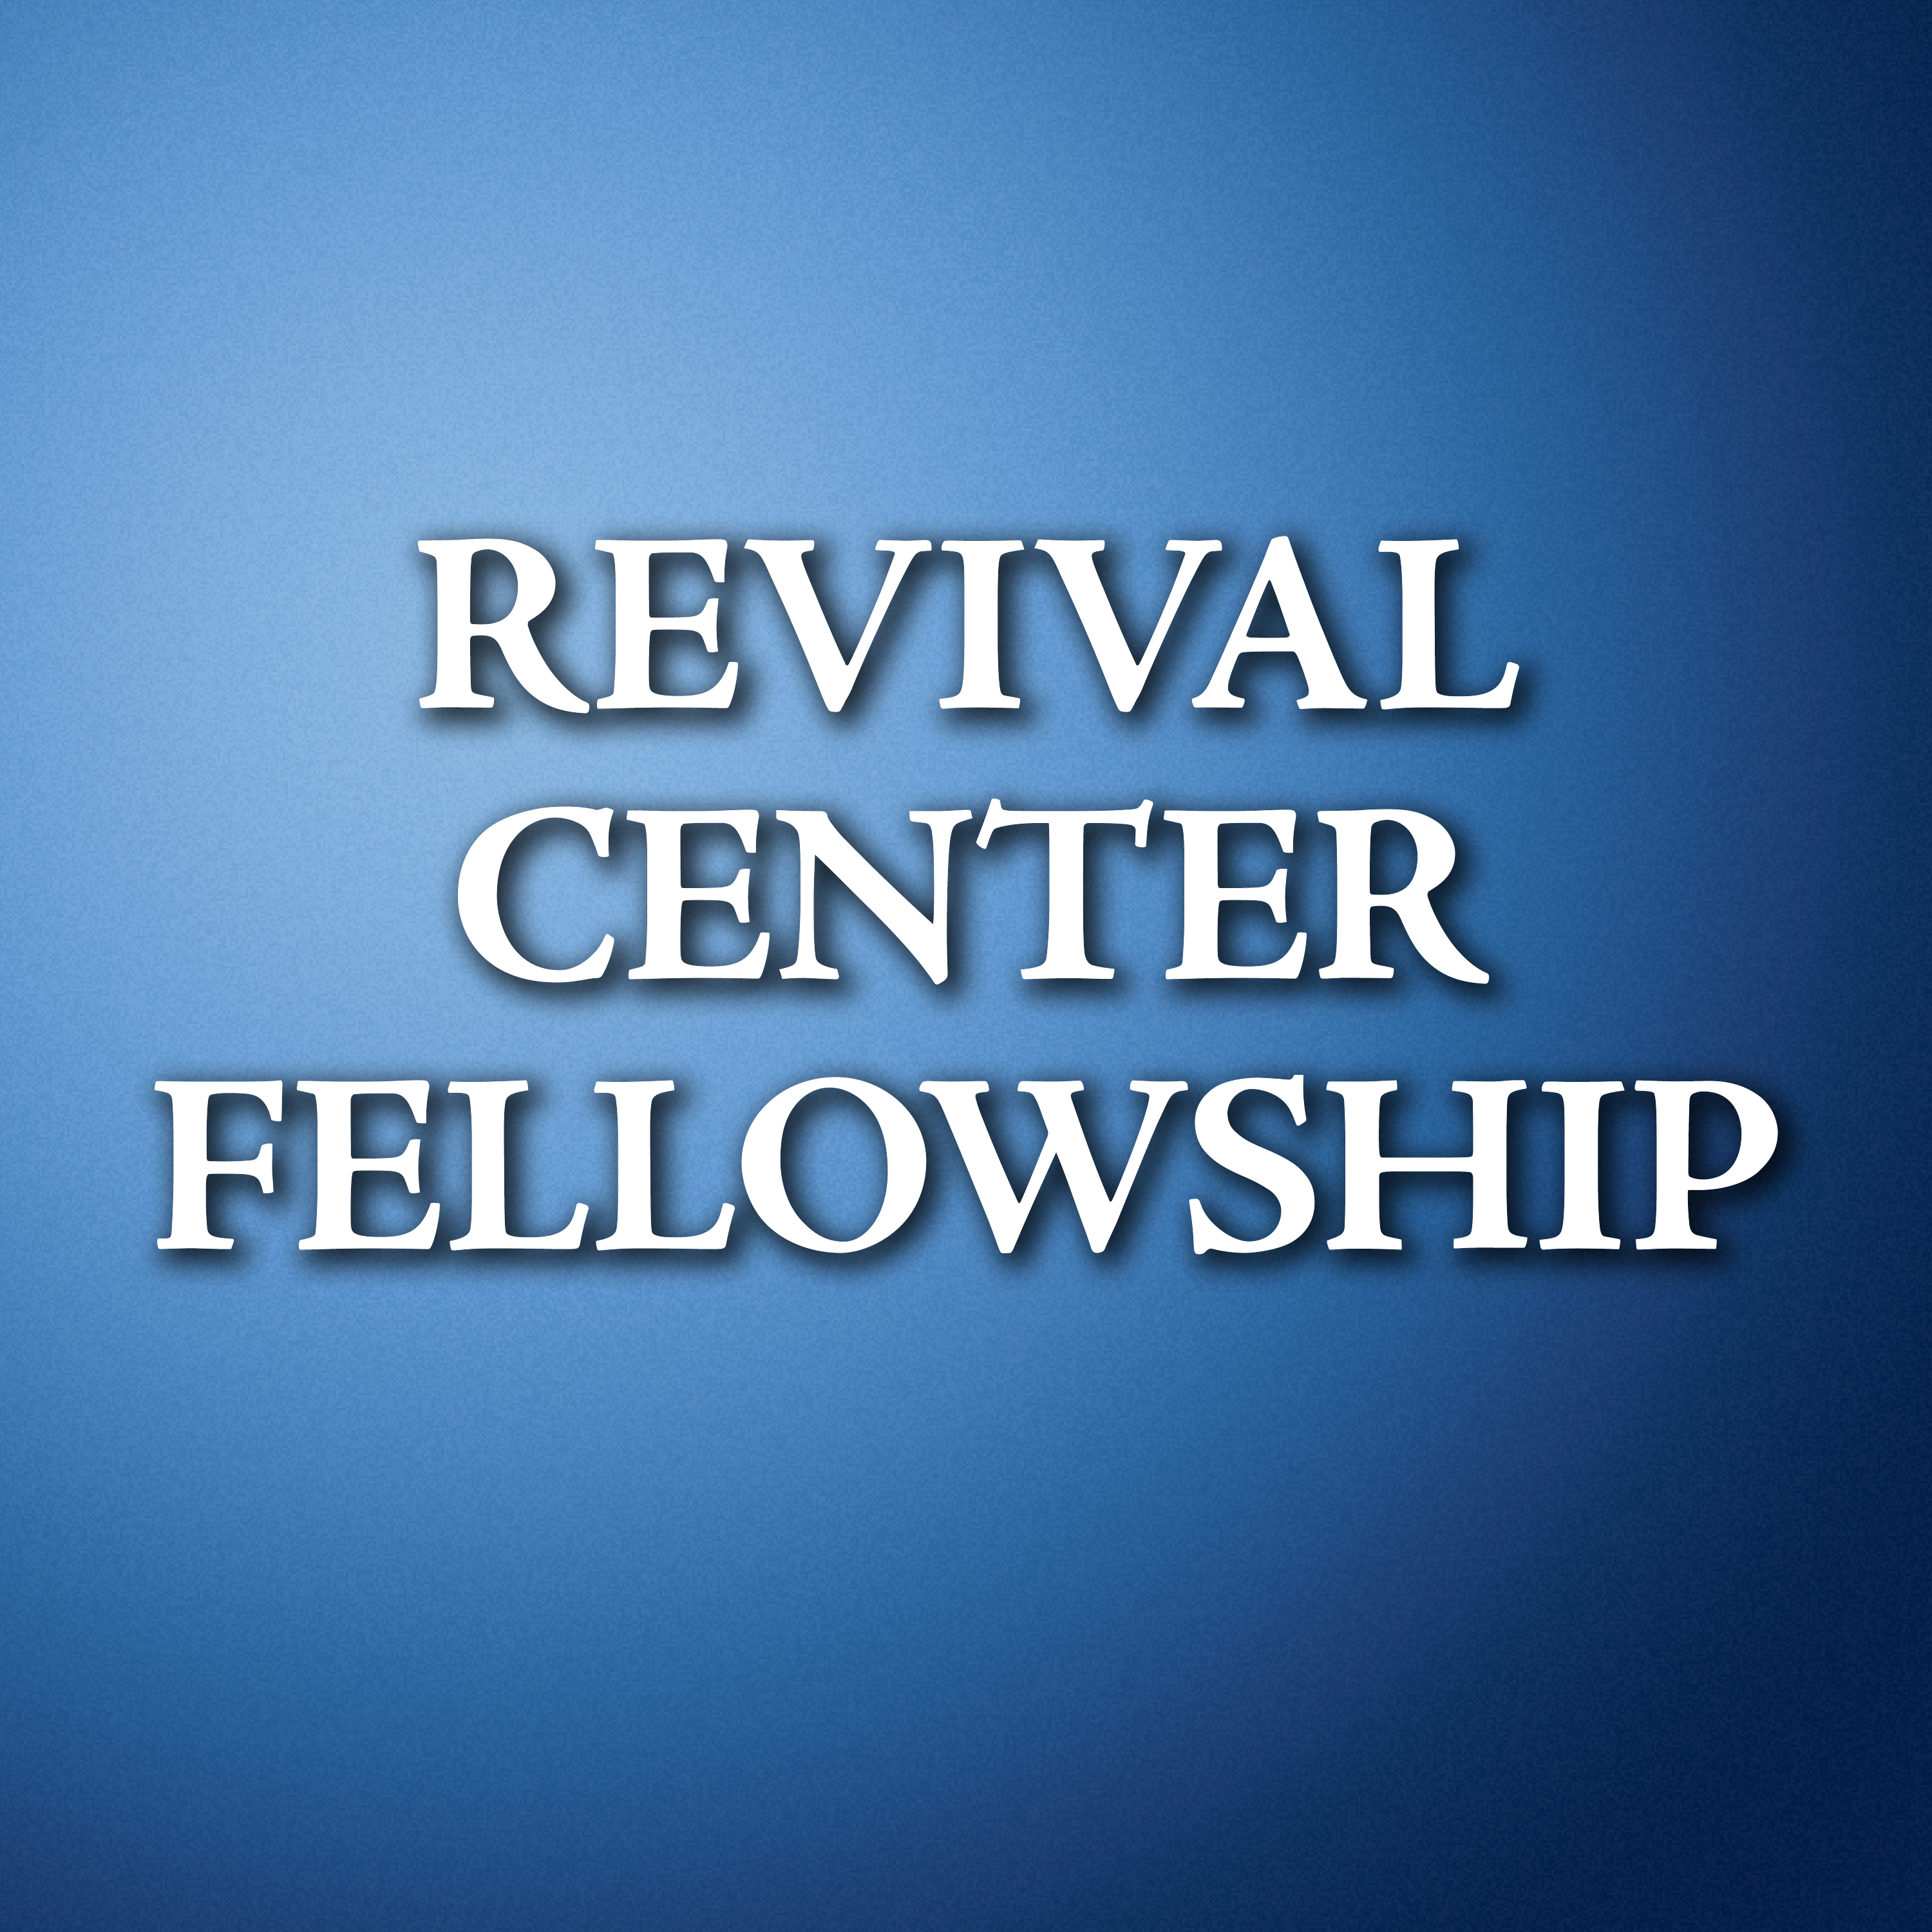 Revival Center Fellowship